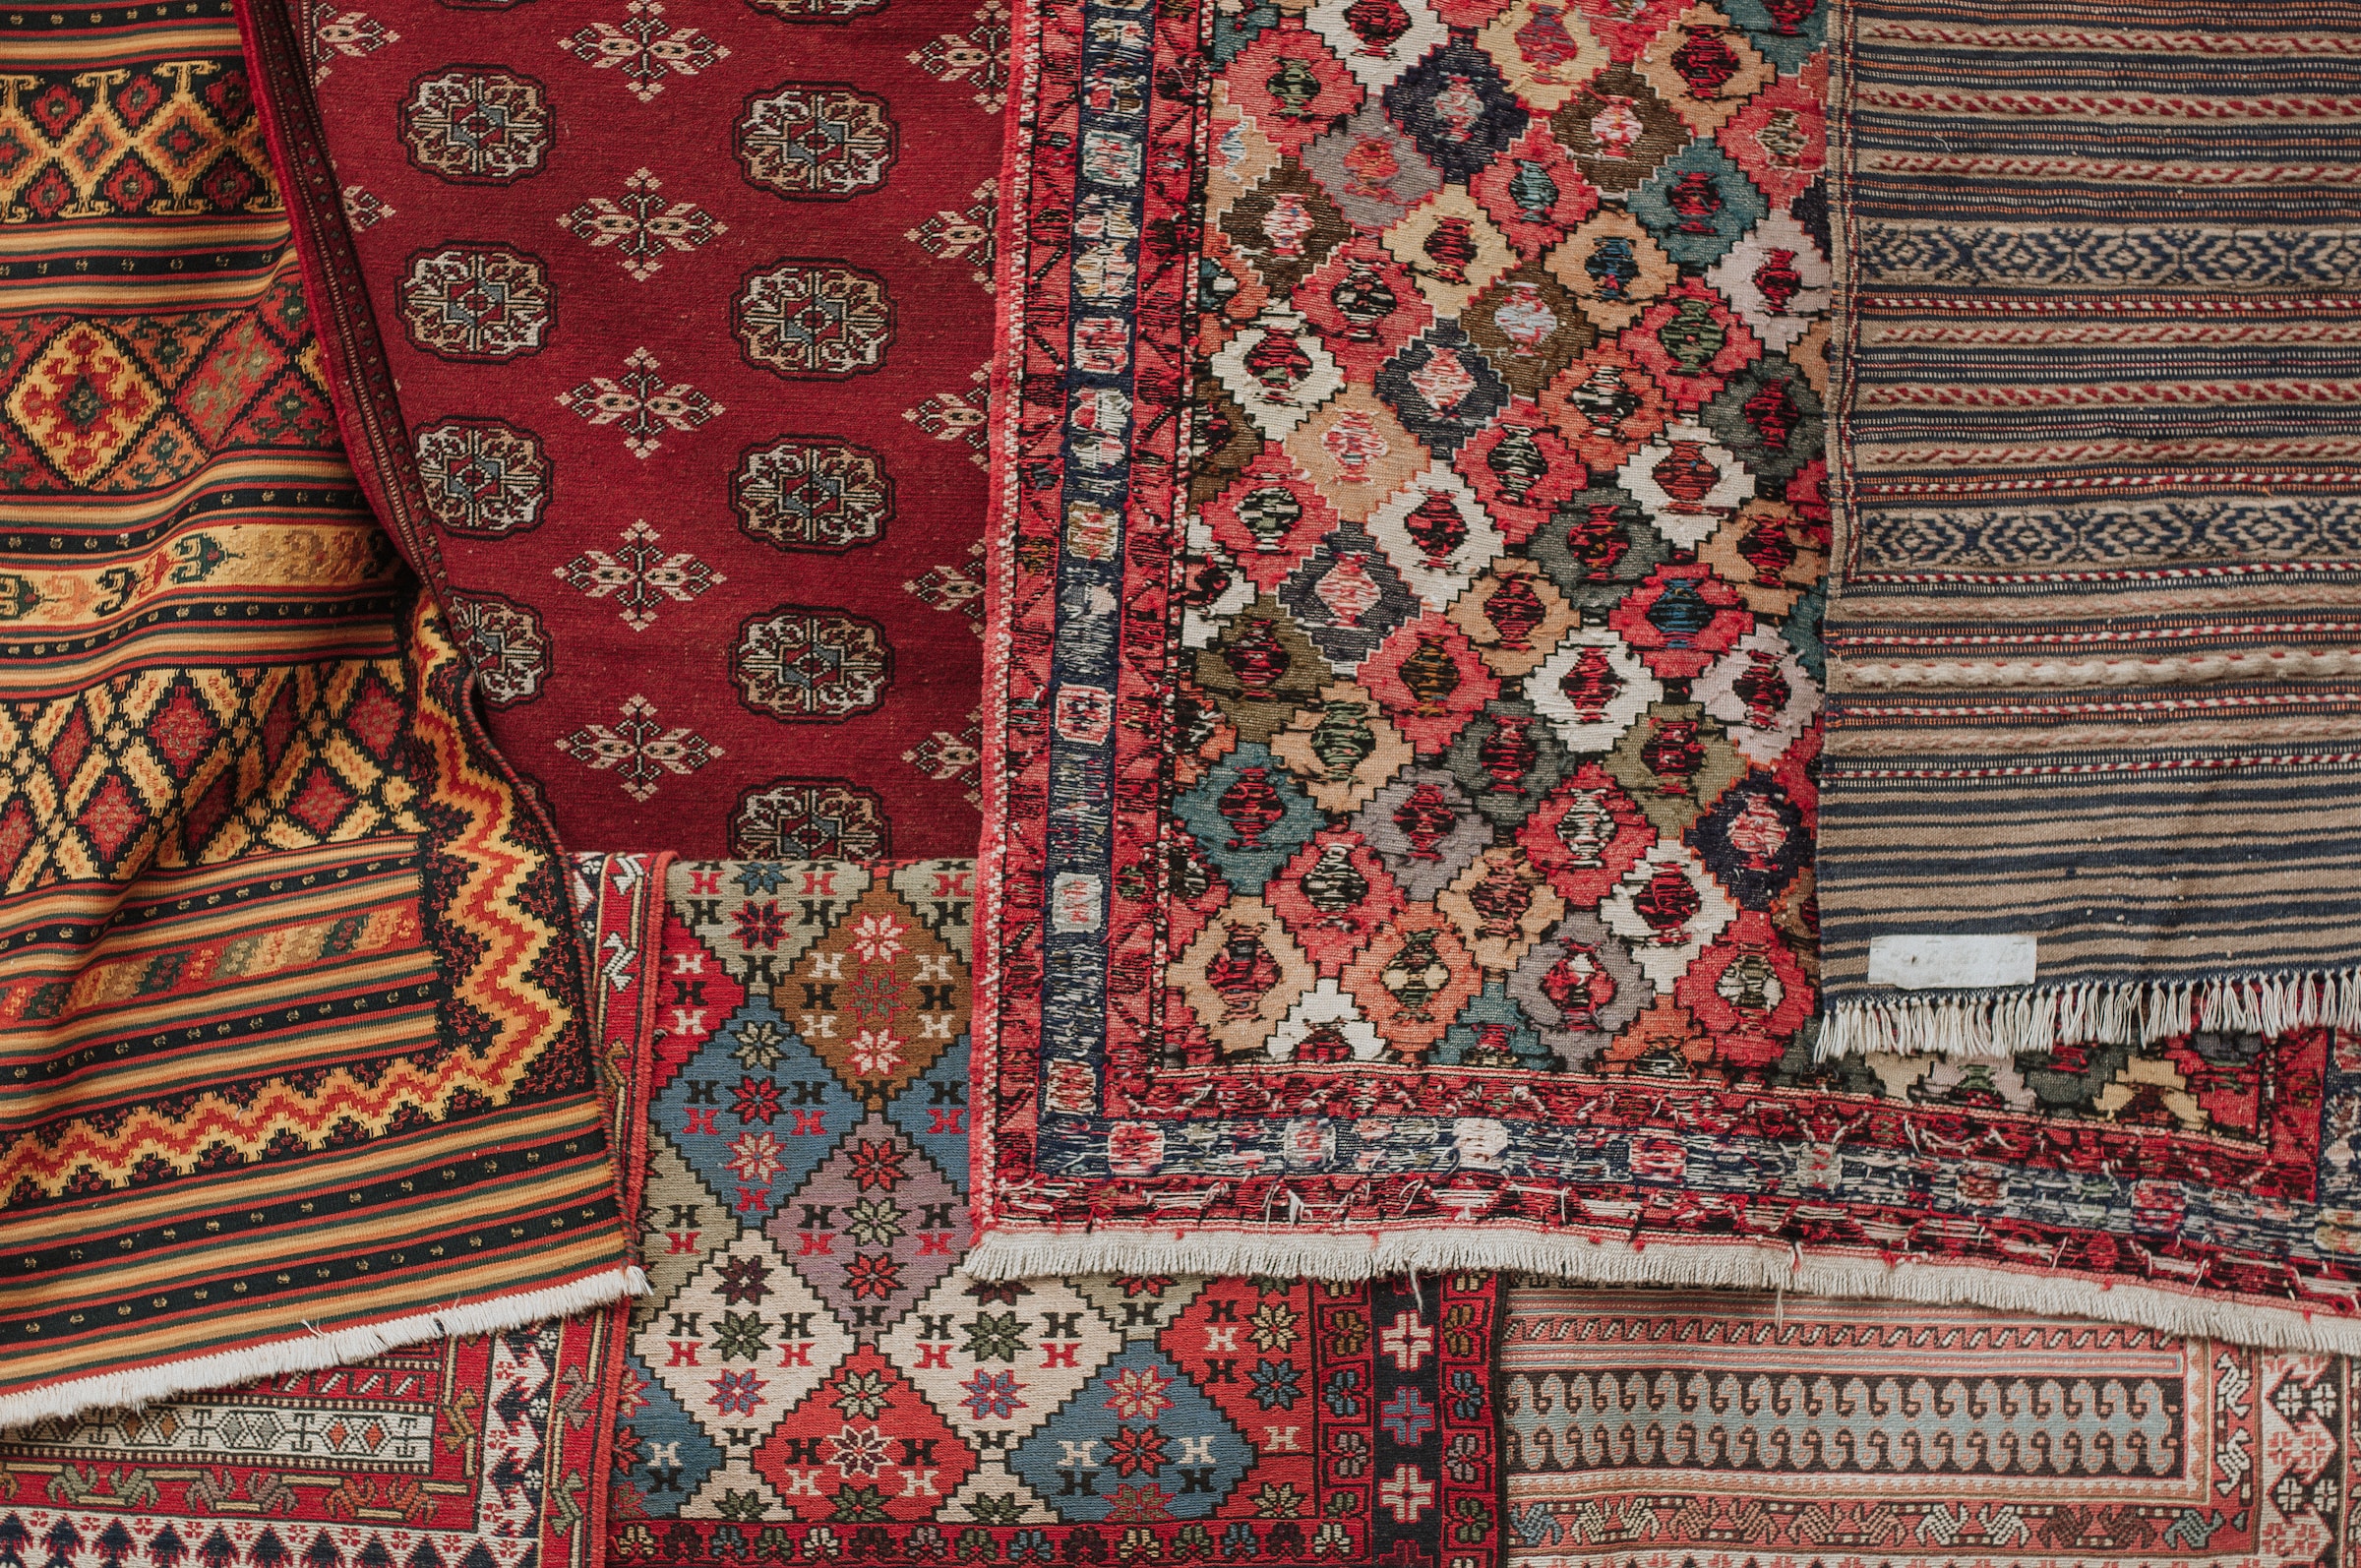 Various rug patterns on display